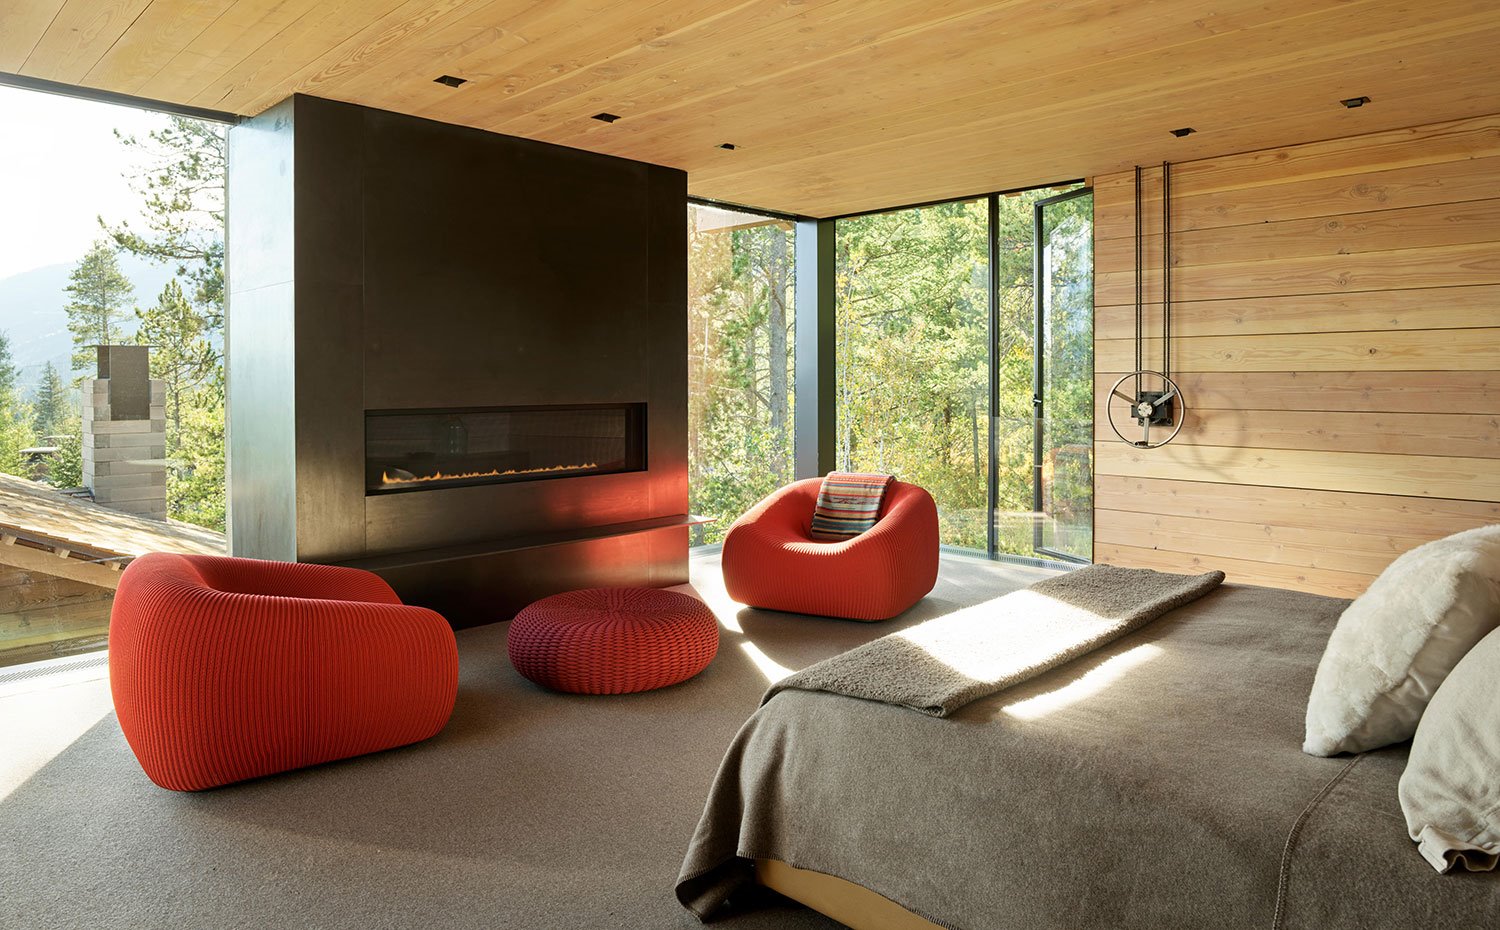 Dormitorio con chimienea, butacas y poufs en rojo, suelo enmoquetado, techos y paredes de madera